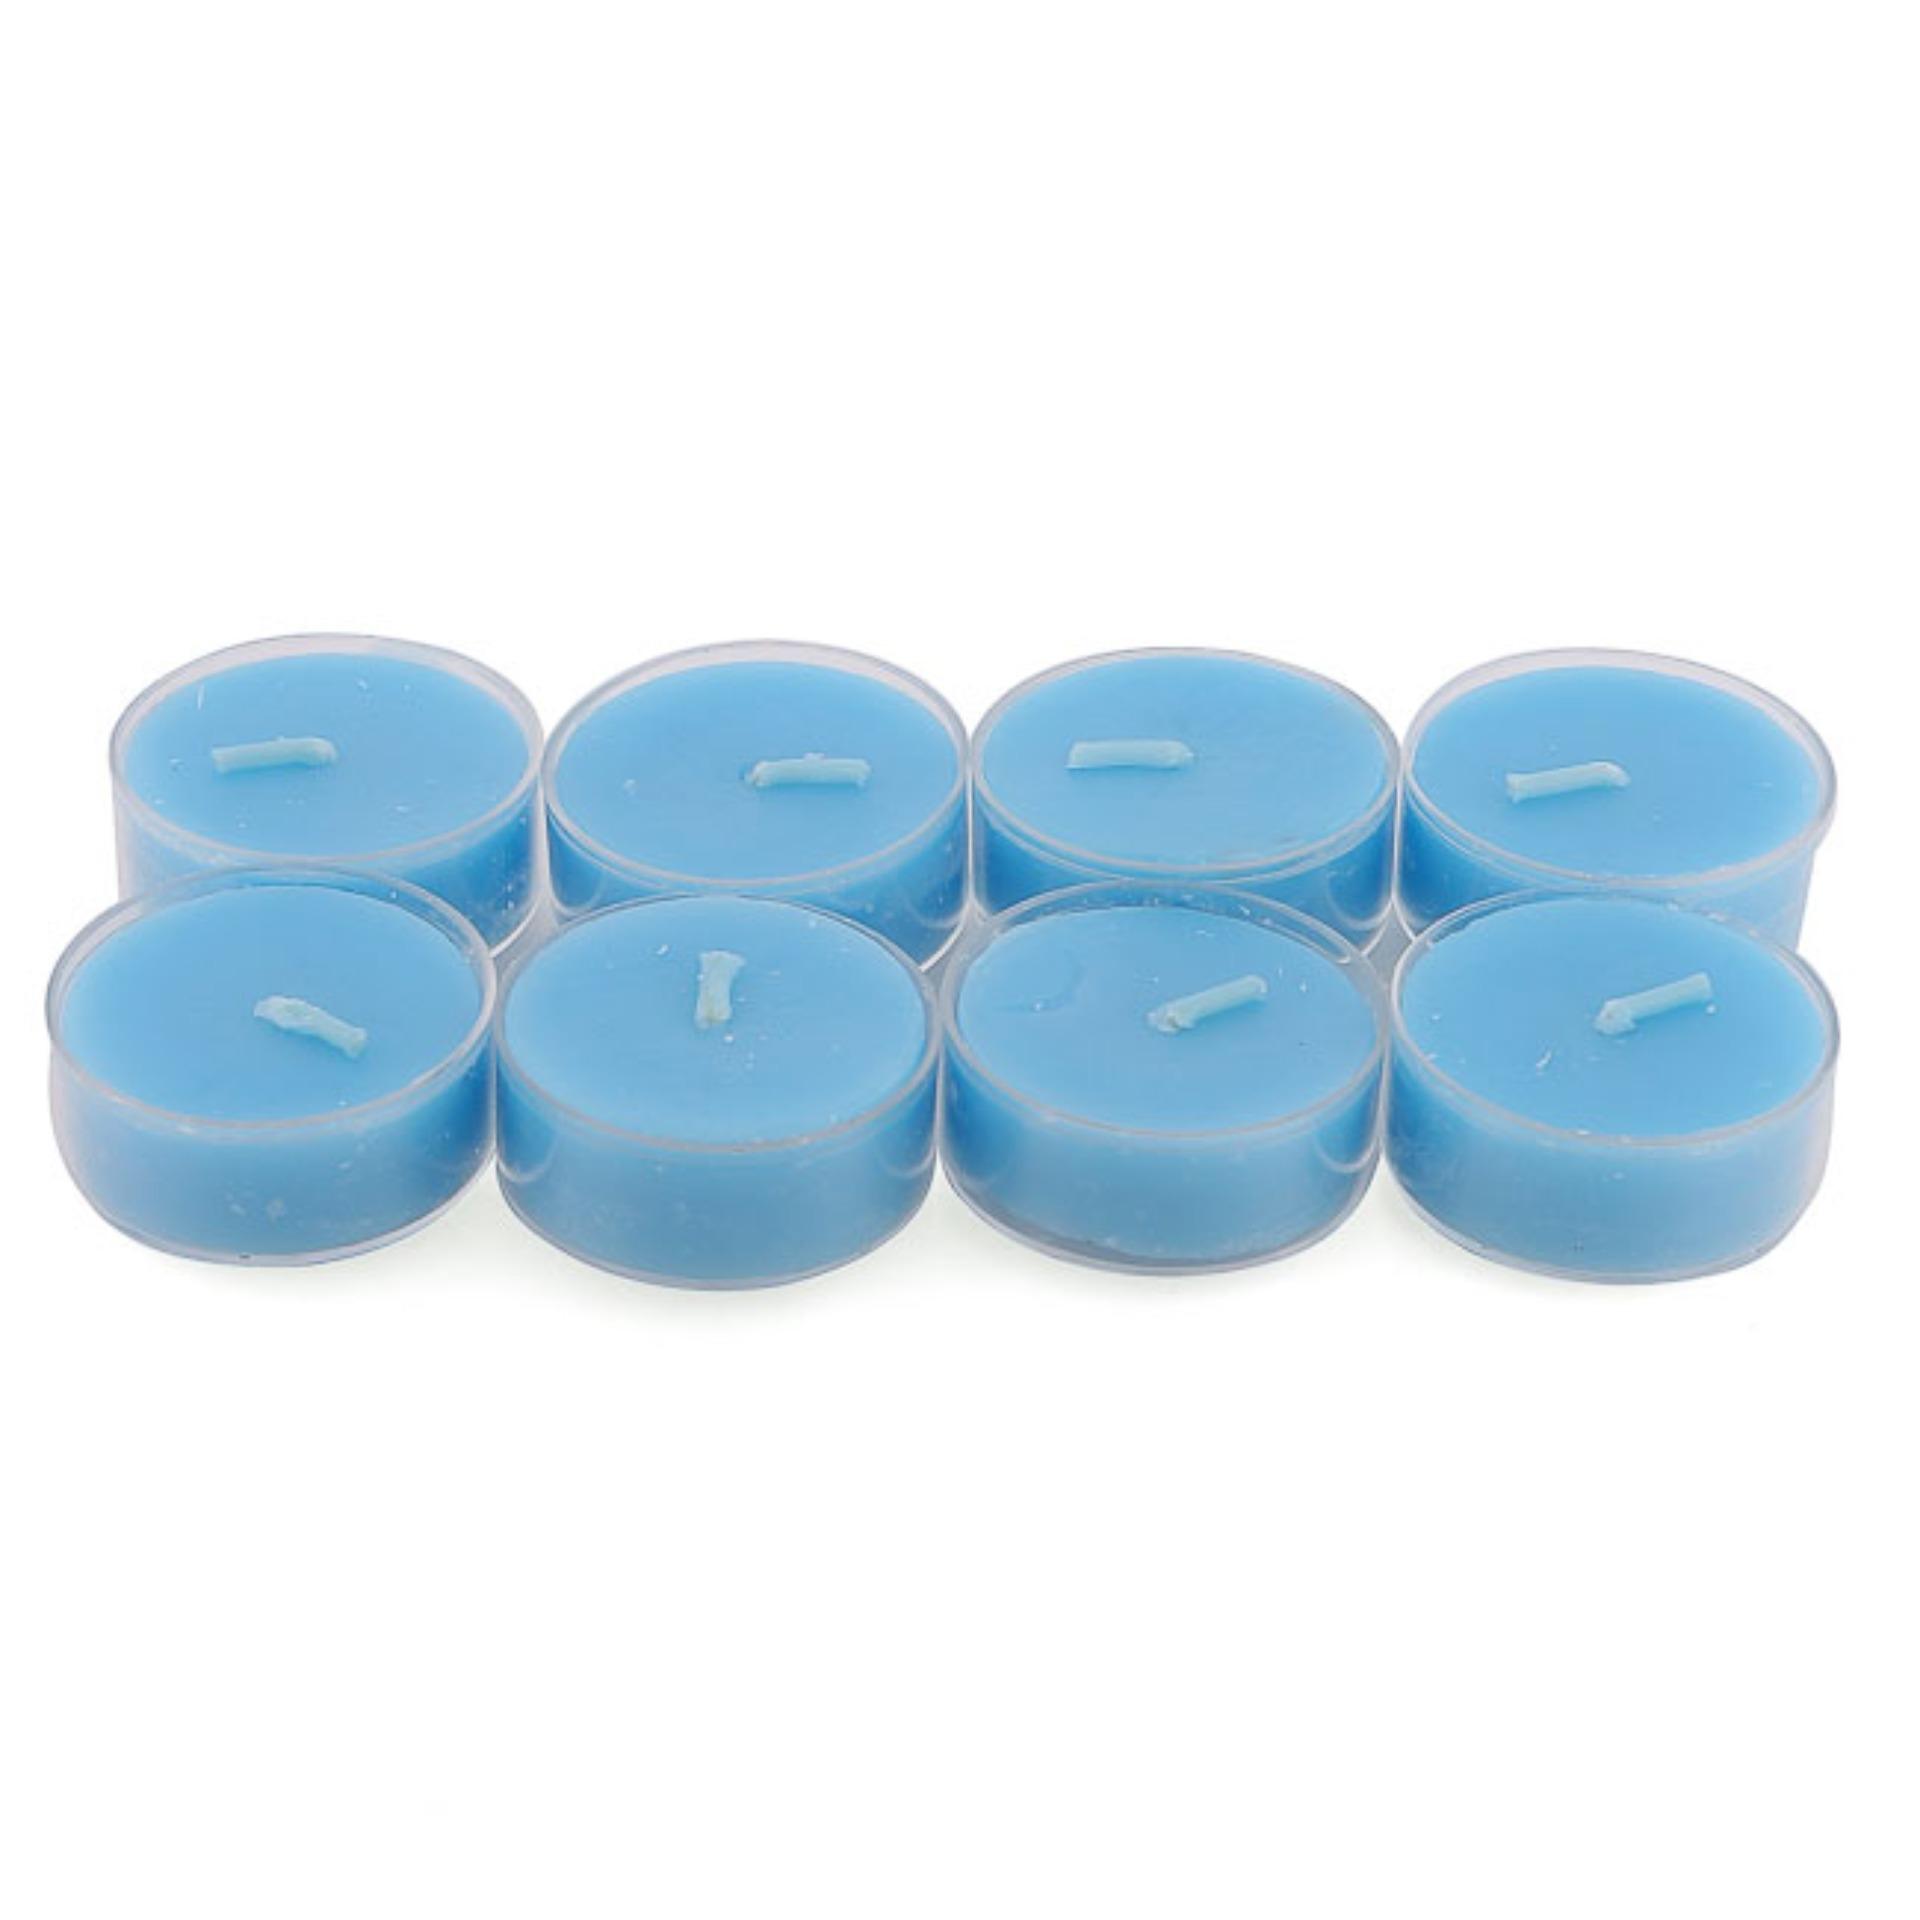 Bộ 4 hộp 32 nến tealight thơm đế nhựa Miss Candle FtraMart FTRA-NQM2059N (Hồng)